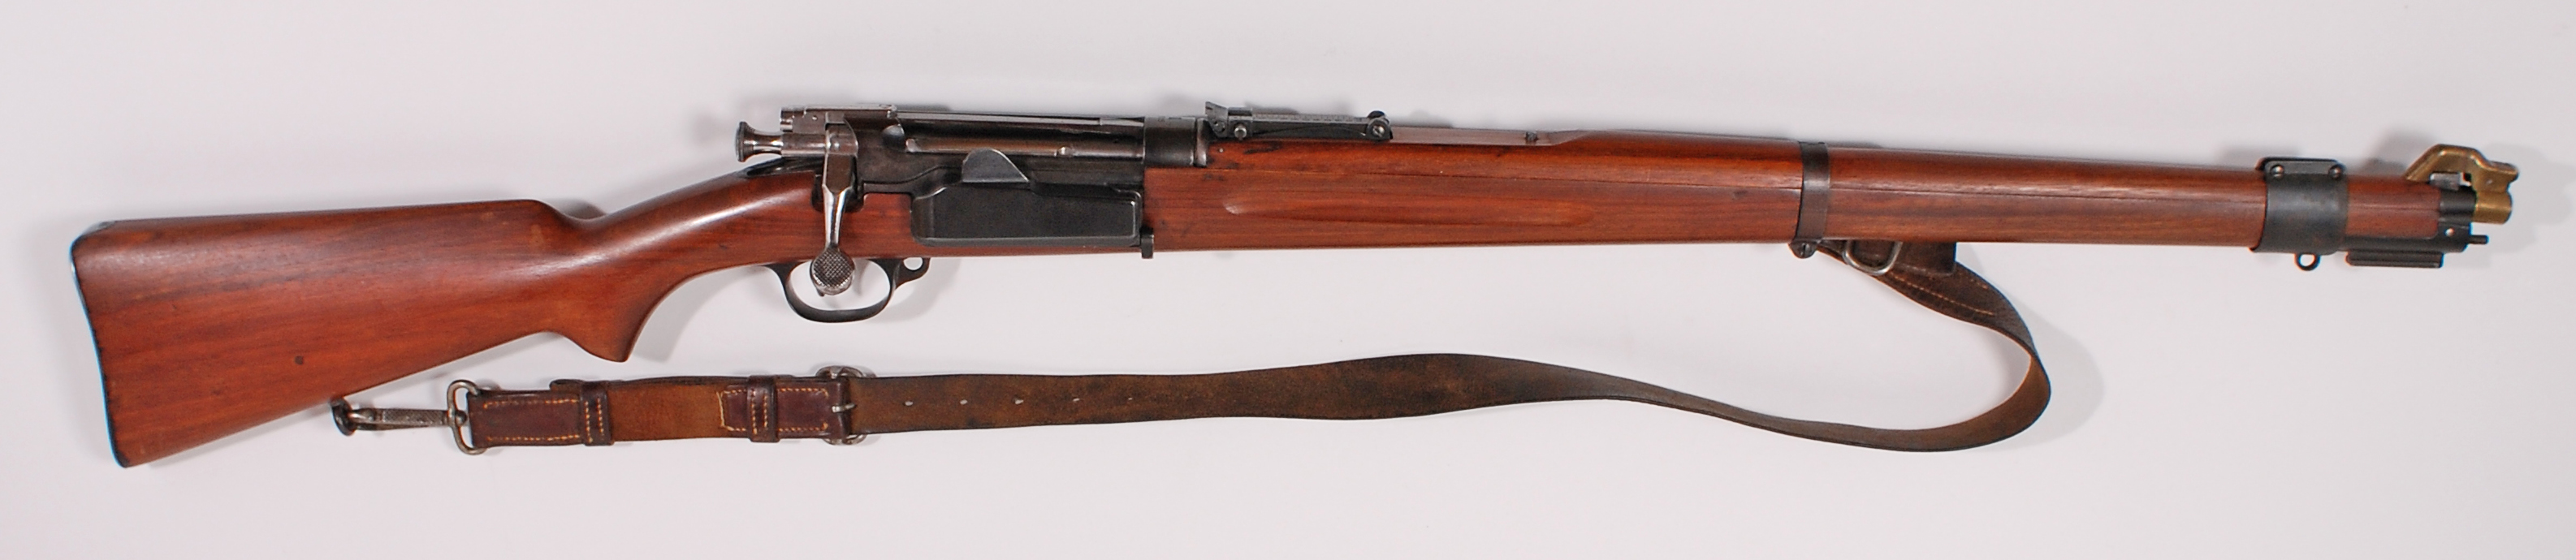 Rifle-Kongsberg-Krag-M1912-16-5447-2.jpg